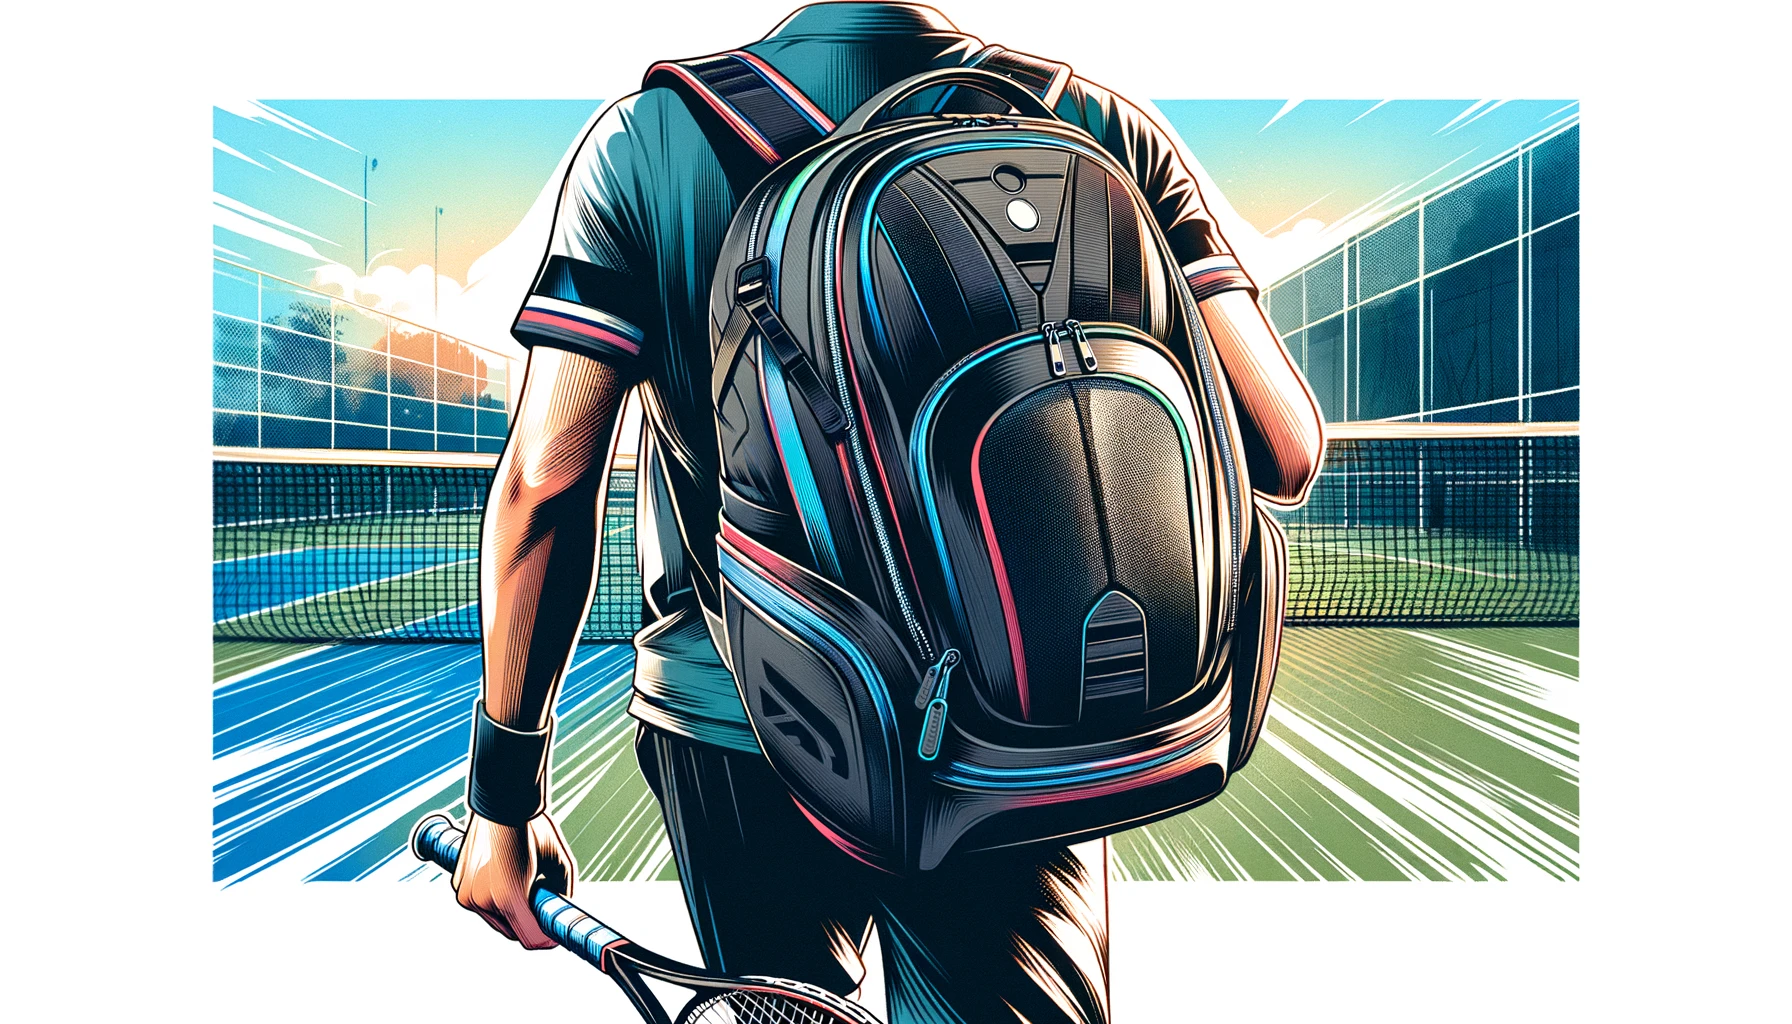 Eine Illustration einer Person, die einen Tennisrucksack über der Schulter trägt und auf einen Tennisplatz zugeht. Der Tennisrucksack ist schlank, schwarz und hat ein Fach speziell für einen Tennisschläger, der von der Seite sichtbar ist.